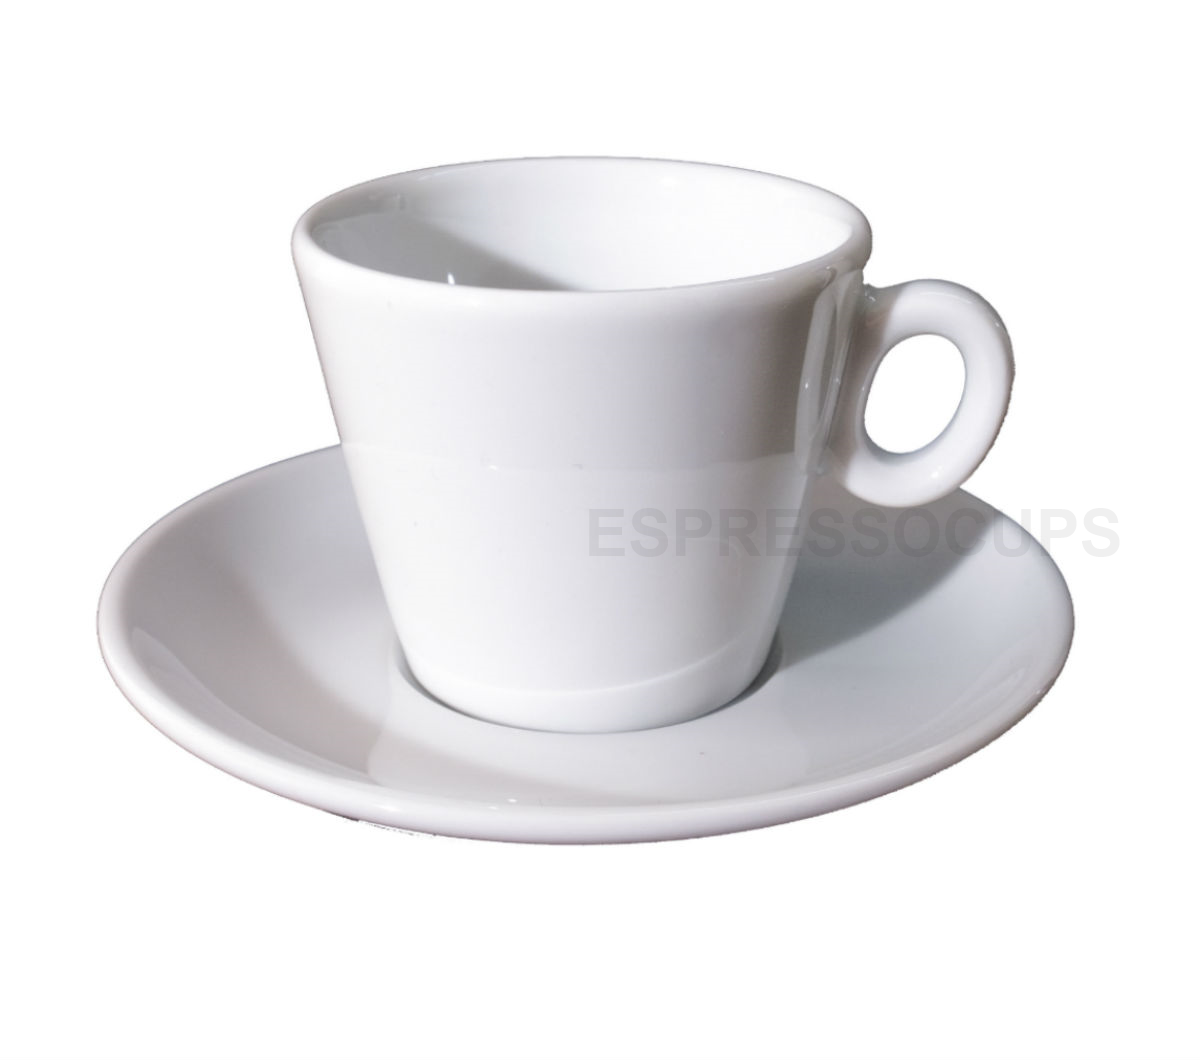 "CAPRI" Cappuccino Cups - white